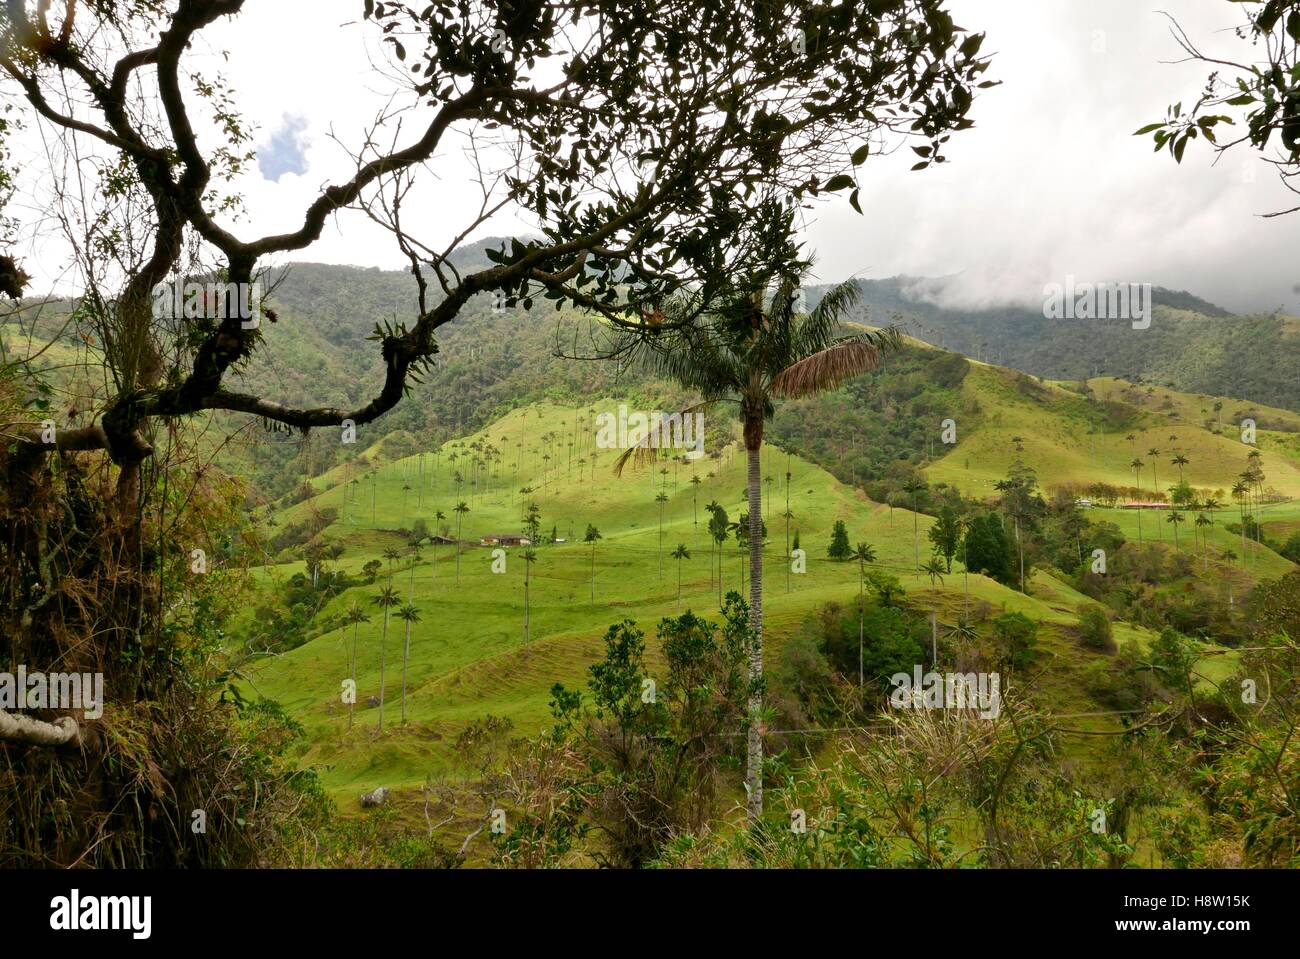 Cire d'imposants palmiers, l'arbre national de la Colombie. La vallée de Cocora, Quindio, la Colombie. Banque D'Images